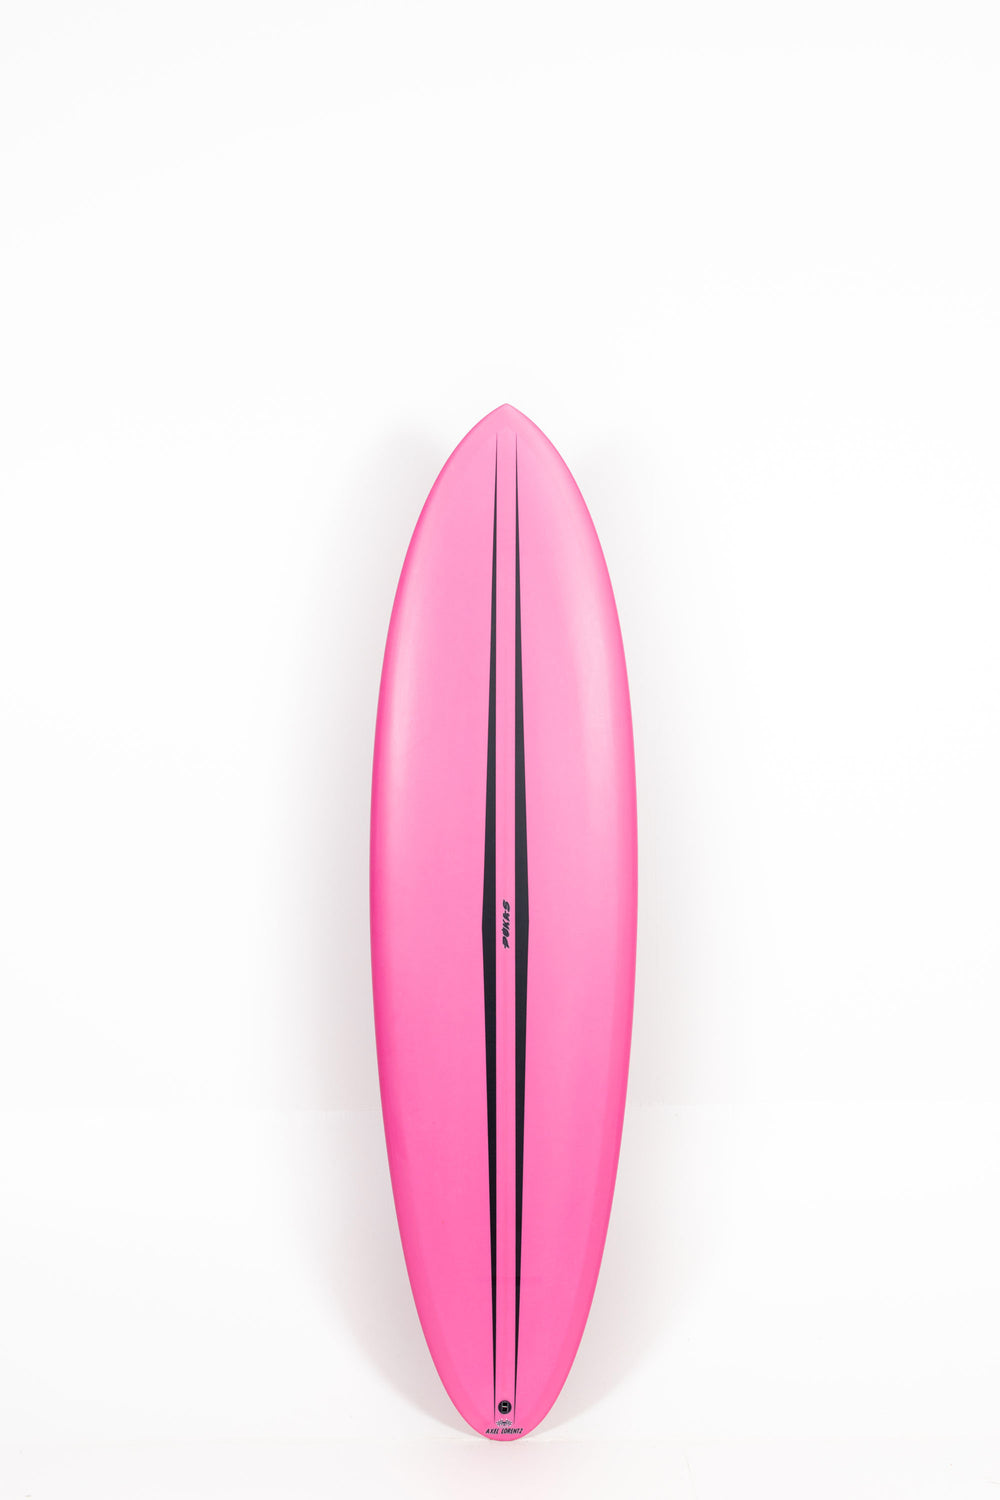 Pukas Surfboard - LA CÔTE by Axel Lorentz - 6'9